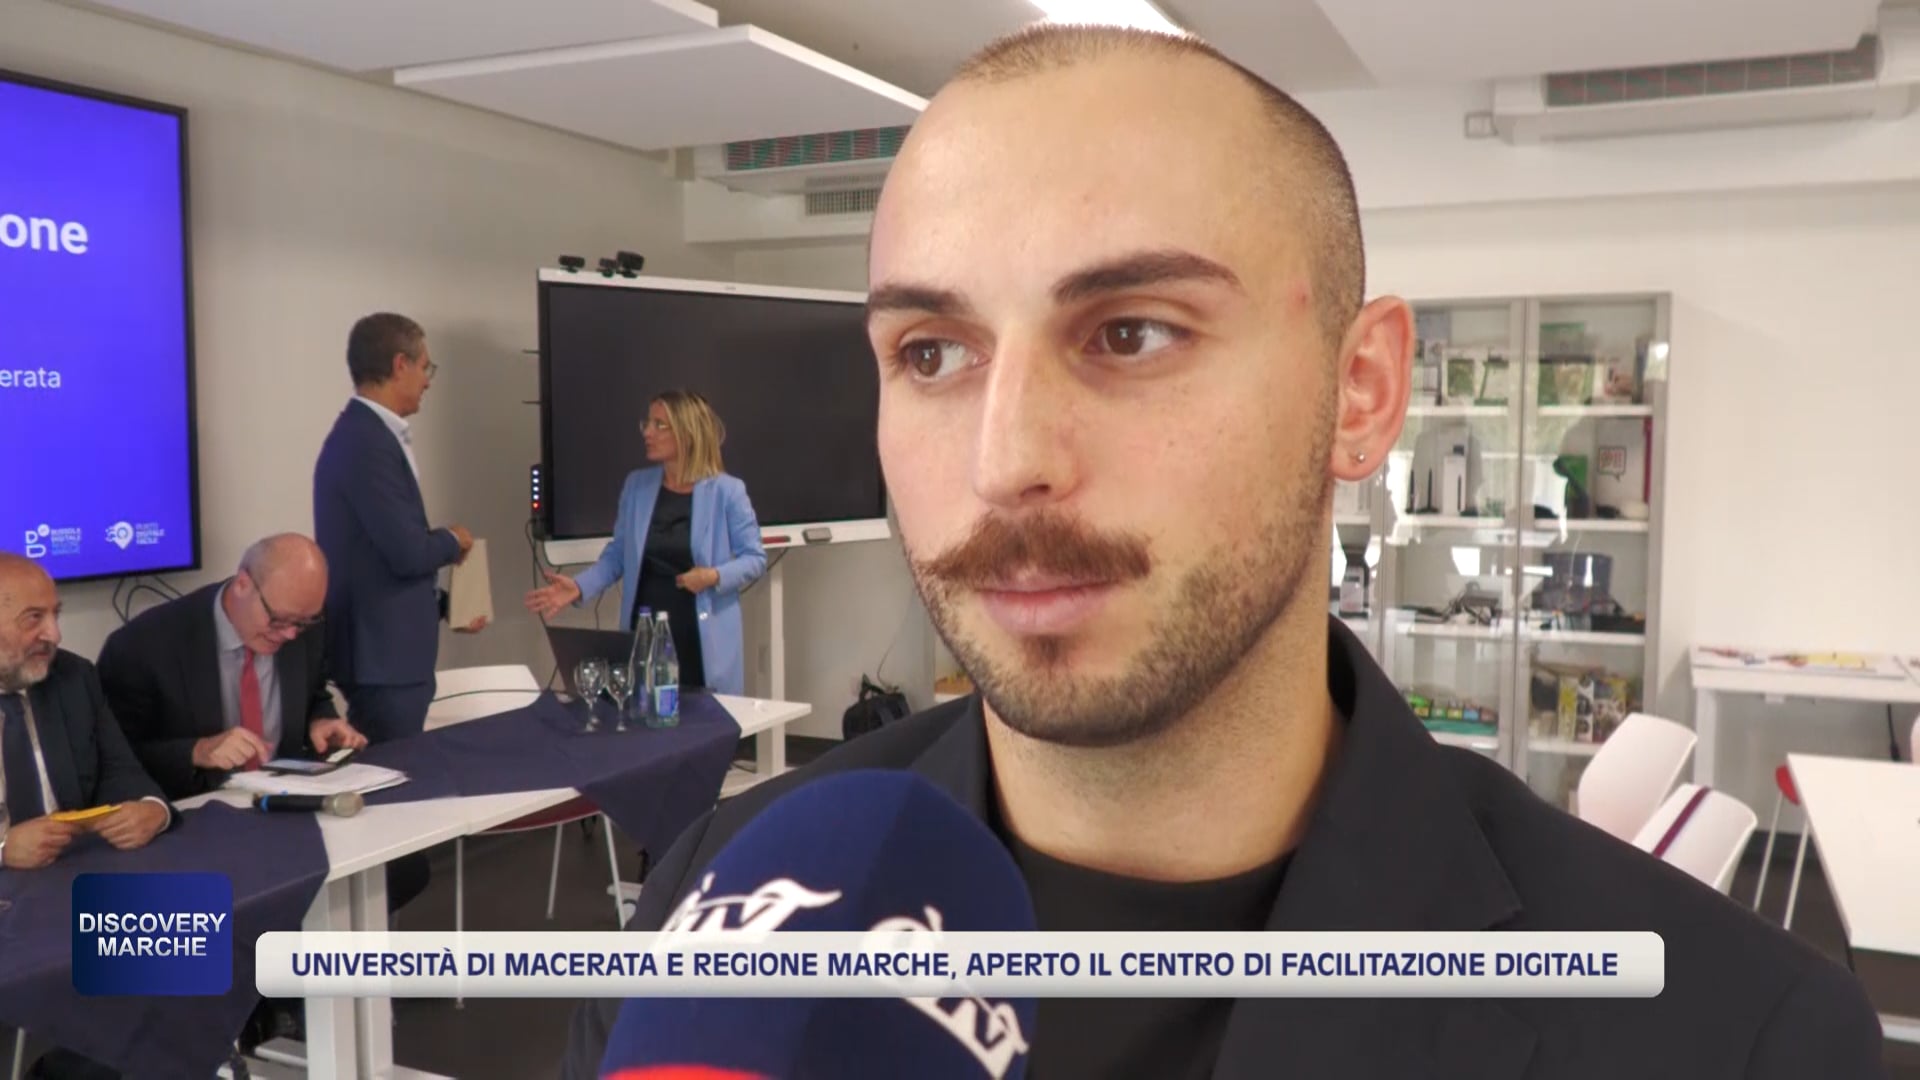 Università di Macerata e Regione Marche, aperto il centro di facilitazione digitale - VIDEO